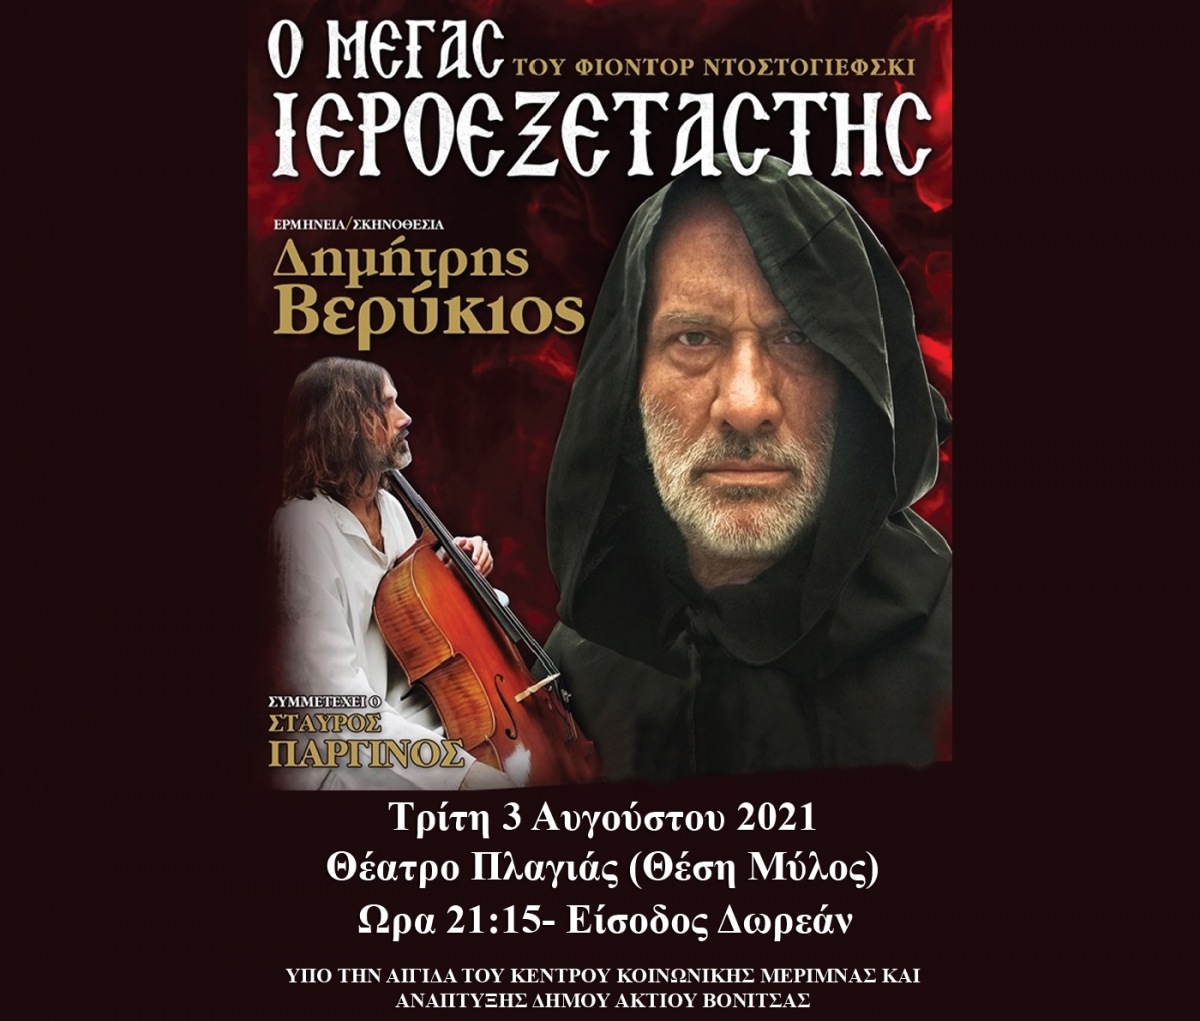 Η θεατρική παράσταση «Ο Μέγας Ιεροεξεταστής» στο ανοιχτό θέατρο της Πλαγιάς του Δήμου Ακτίου Βόνιτσας (Τρι 3/8/2021 21:15)